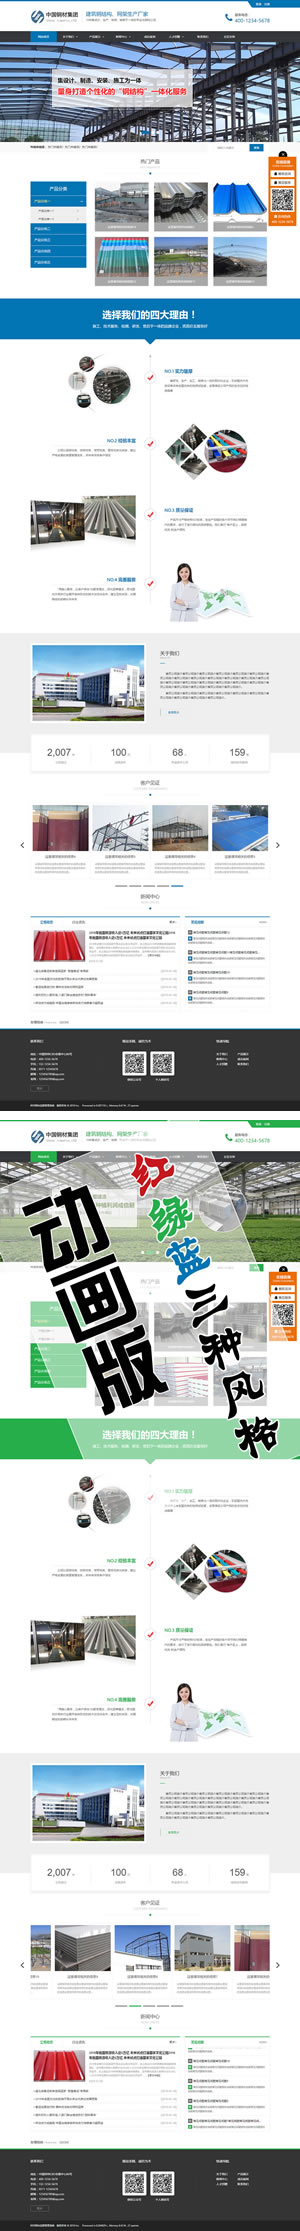 襄阳市企业营销型版网站模版【红绿蓝】3种风格通用